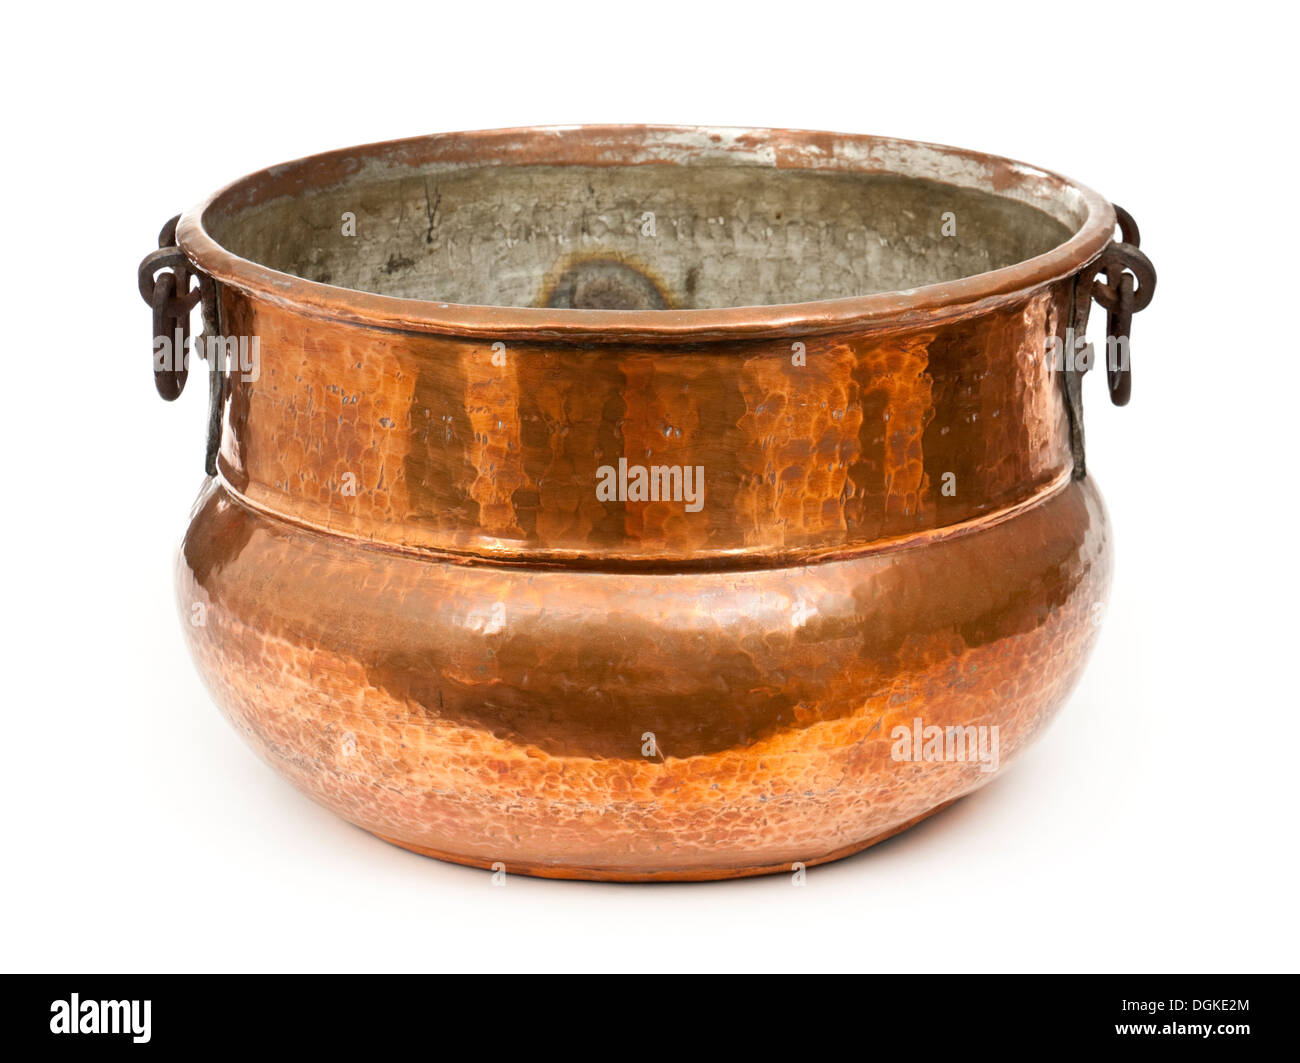 https://c8.alamy.com/comp/DGKE2M/antique-copper-cooking-pot-DGKE2M.jpg